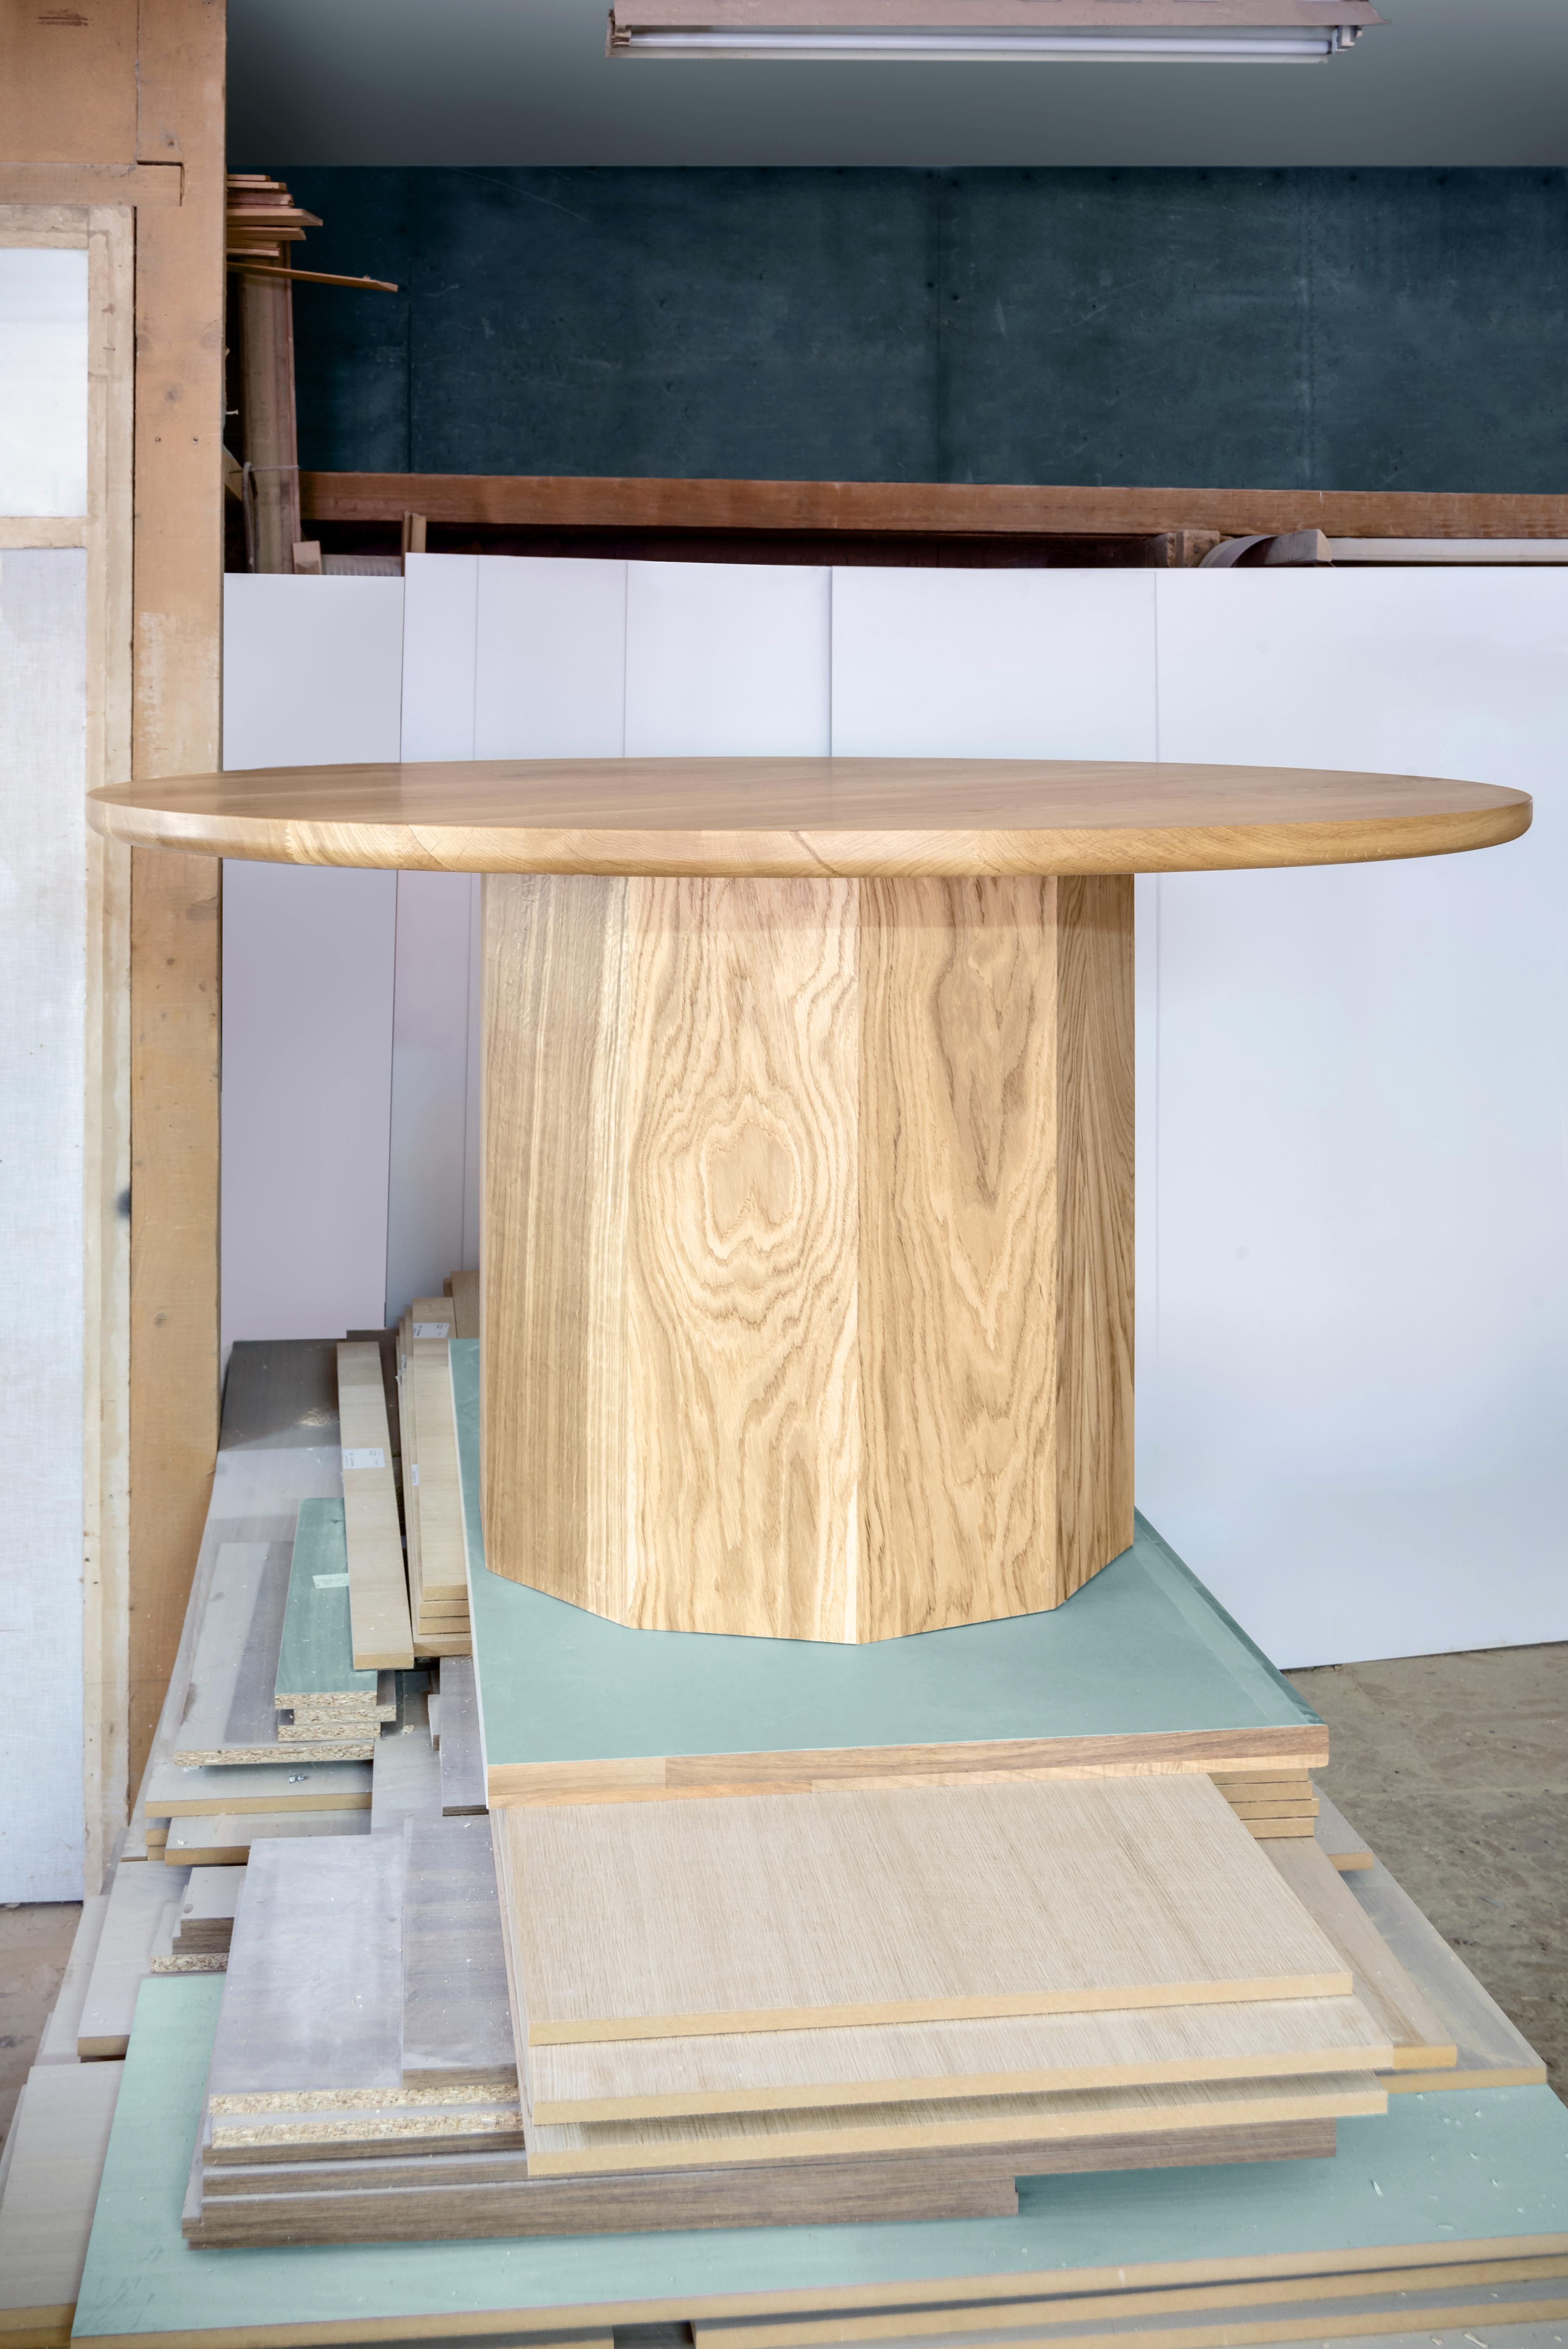 Table à manger en chêne de Daniel Nikolovski
Dimensions : ø 150 x H 80 cm, Base : ø 65 cm
Matériaux : Chêne massif
Disponible également en noyer.

Fabriquée à la main à partir de bois de chêne d'origine locale, provenant du sud de la Macédoine, la